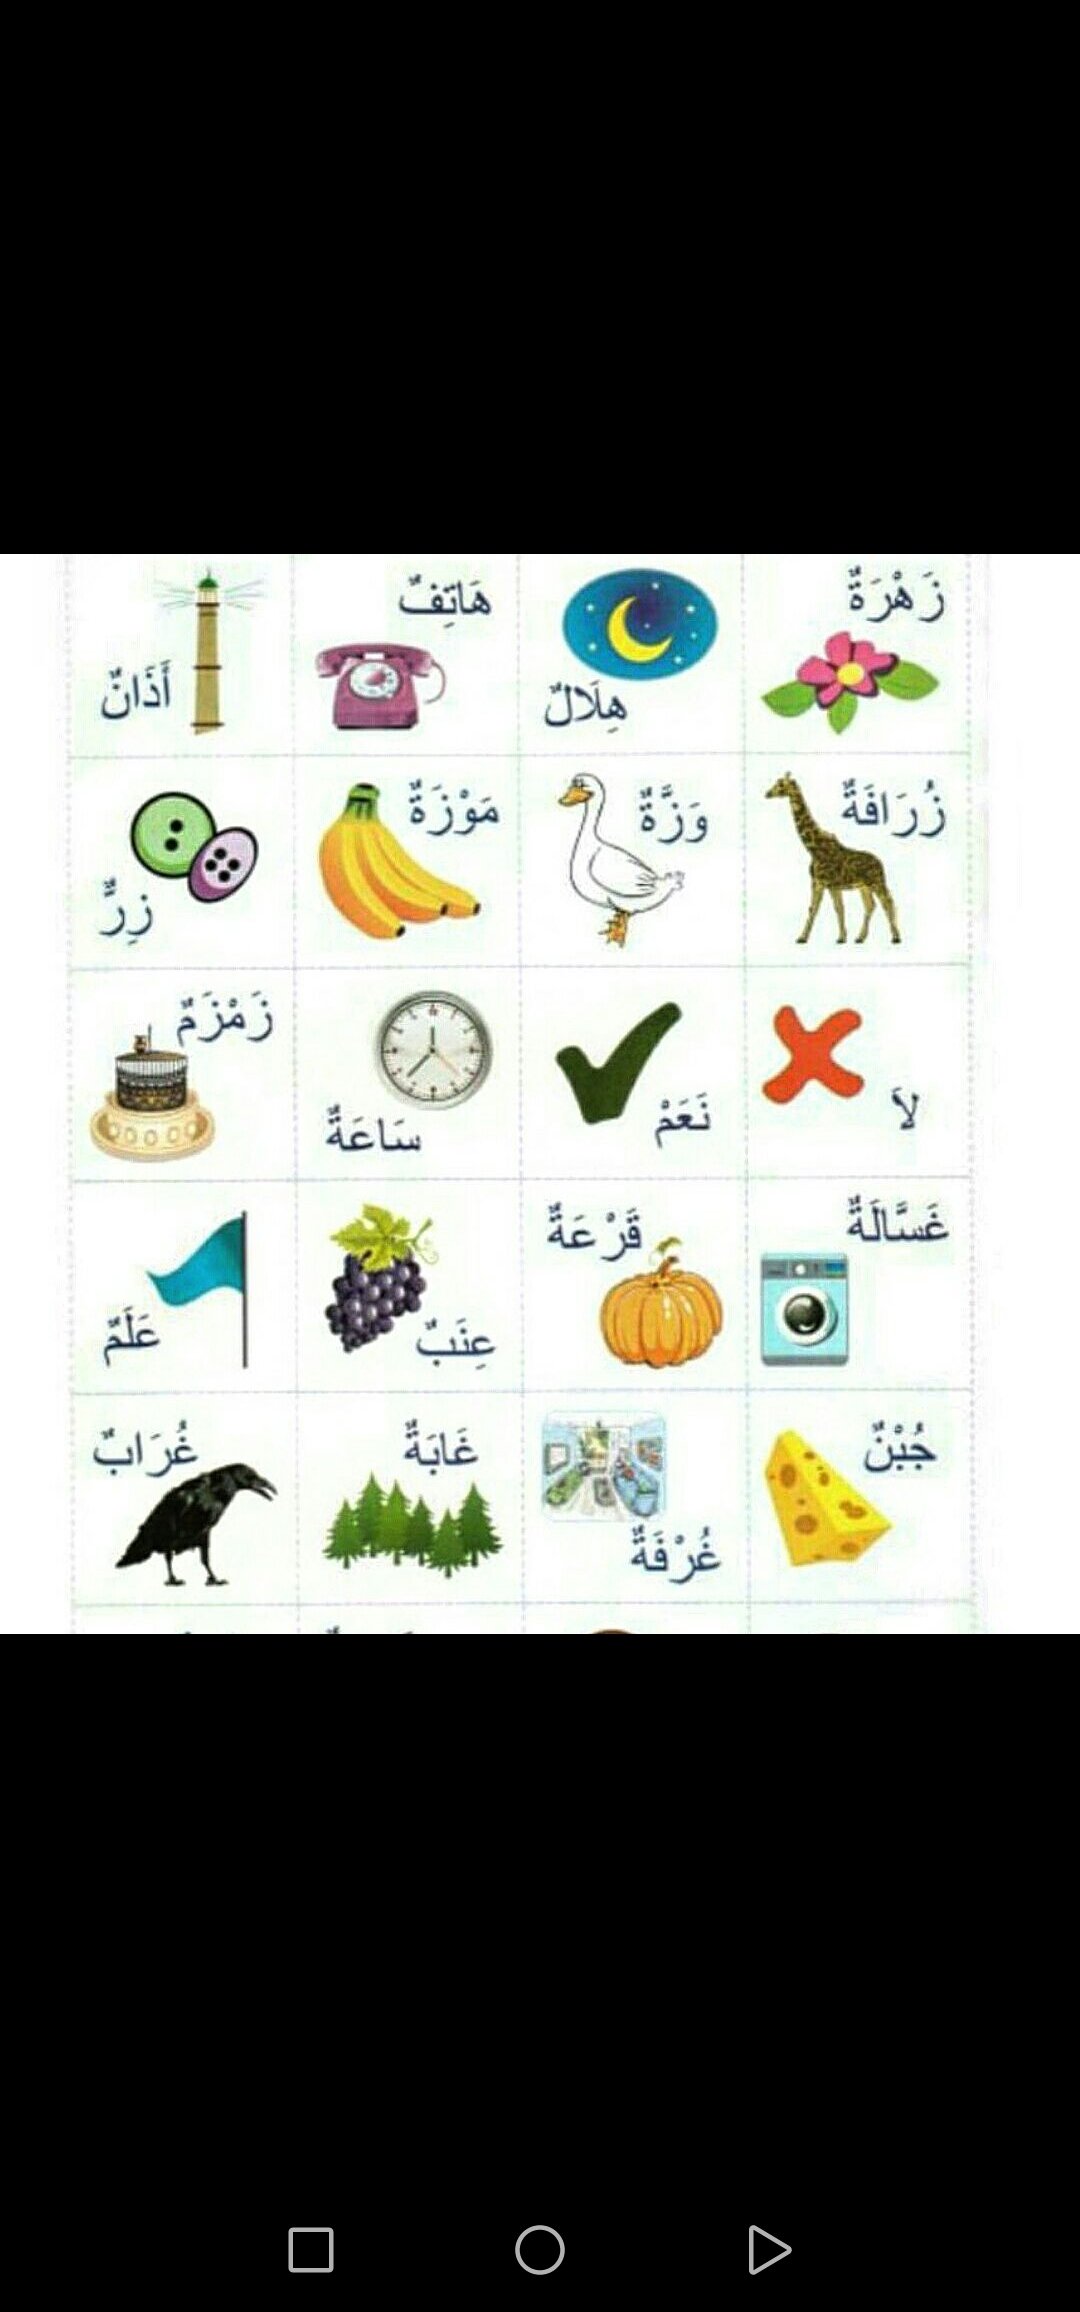 Обучение арабскому языку!